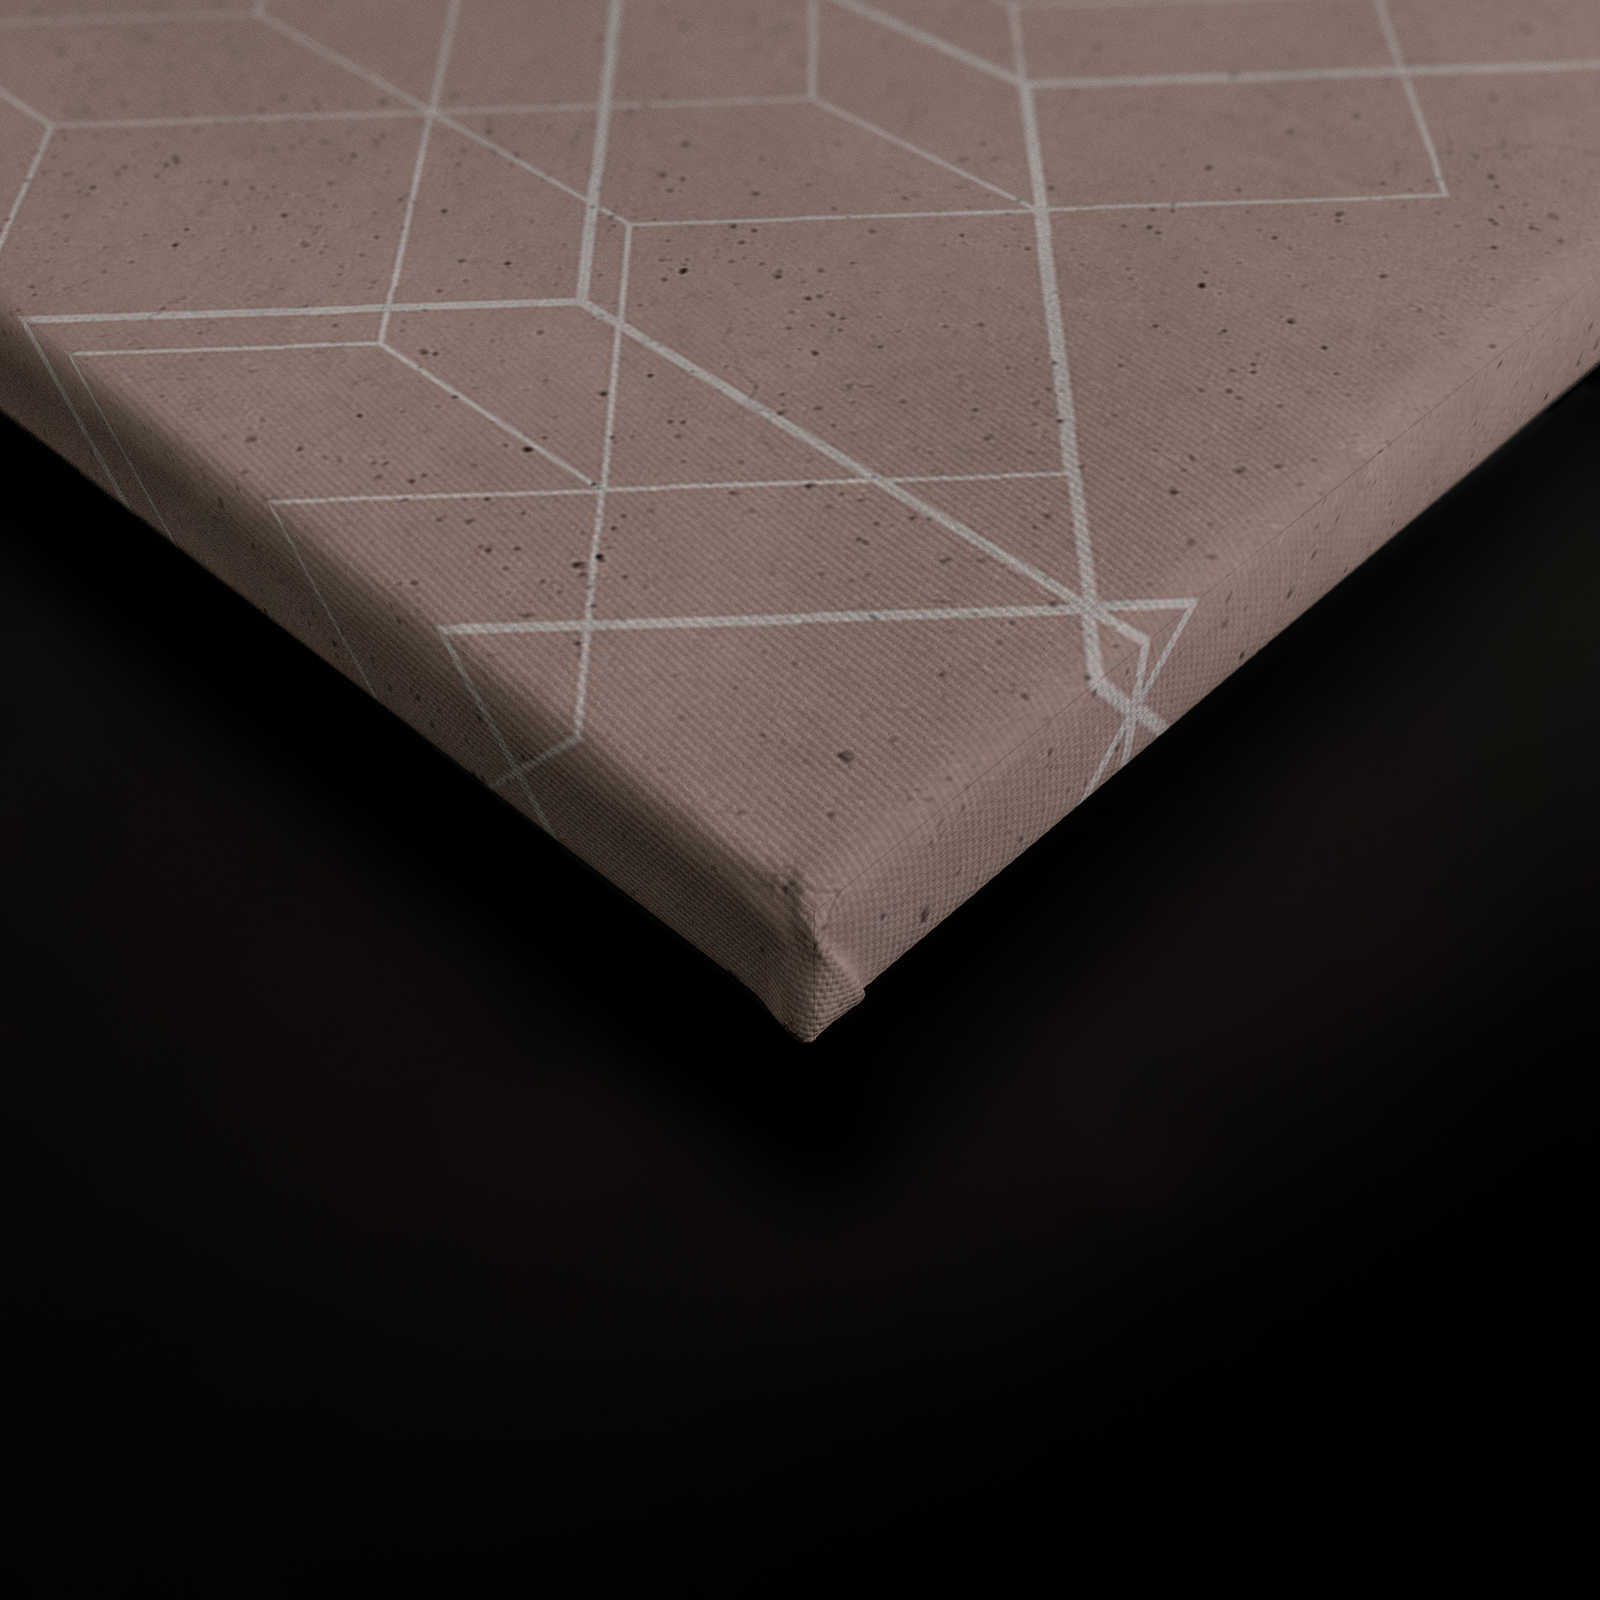             Leinwandbild geometrisches Muster | beige, weiß – 1,20 m x 0,80 m
        